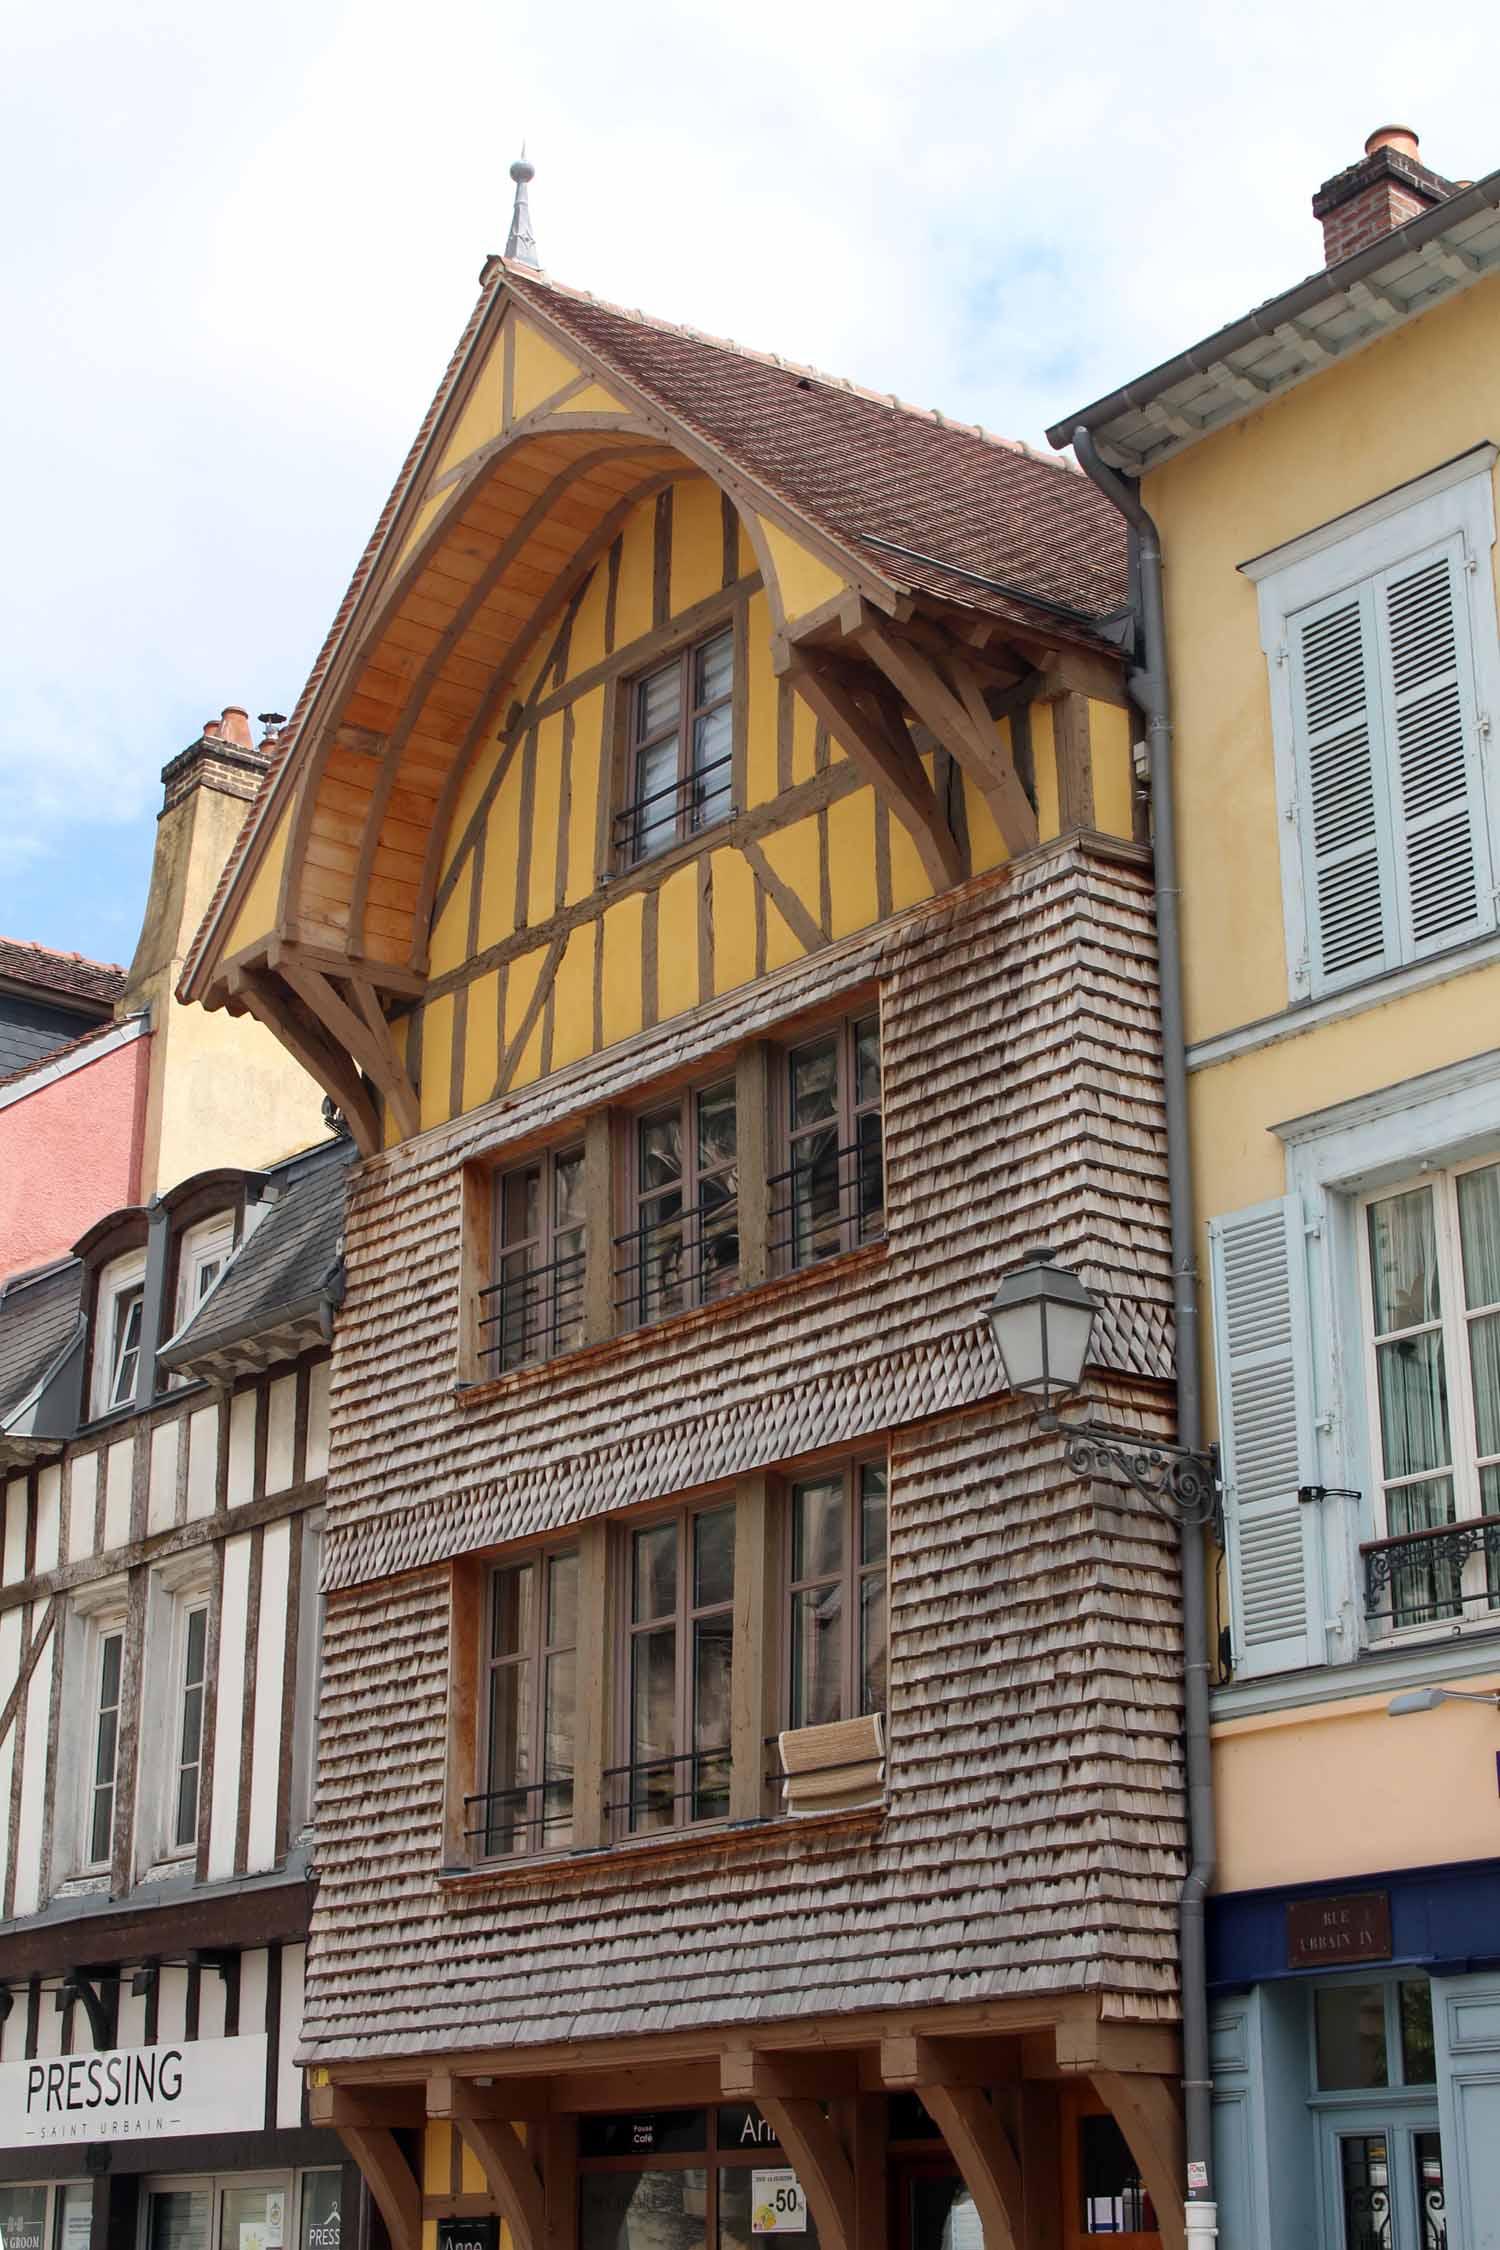 Troyes, maison typique à colombage